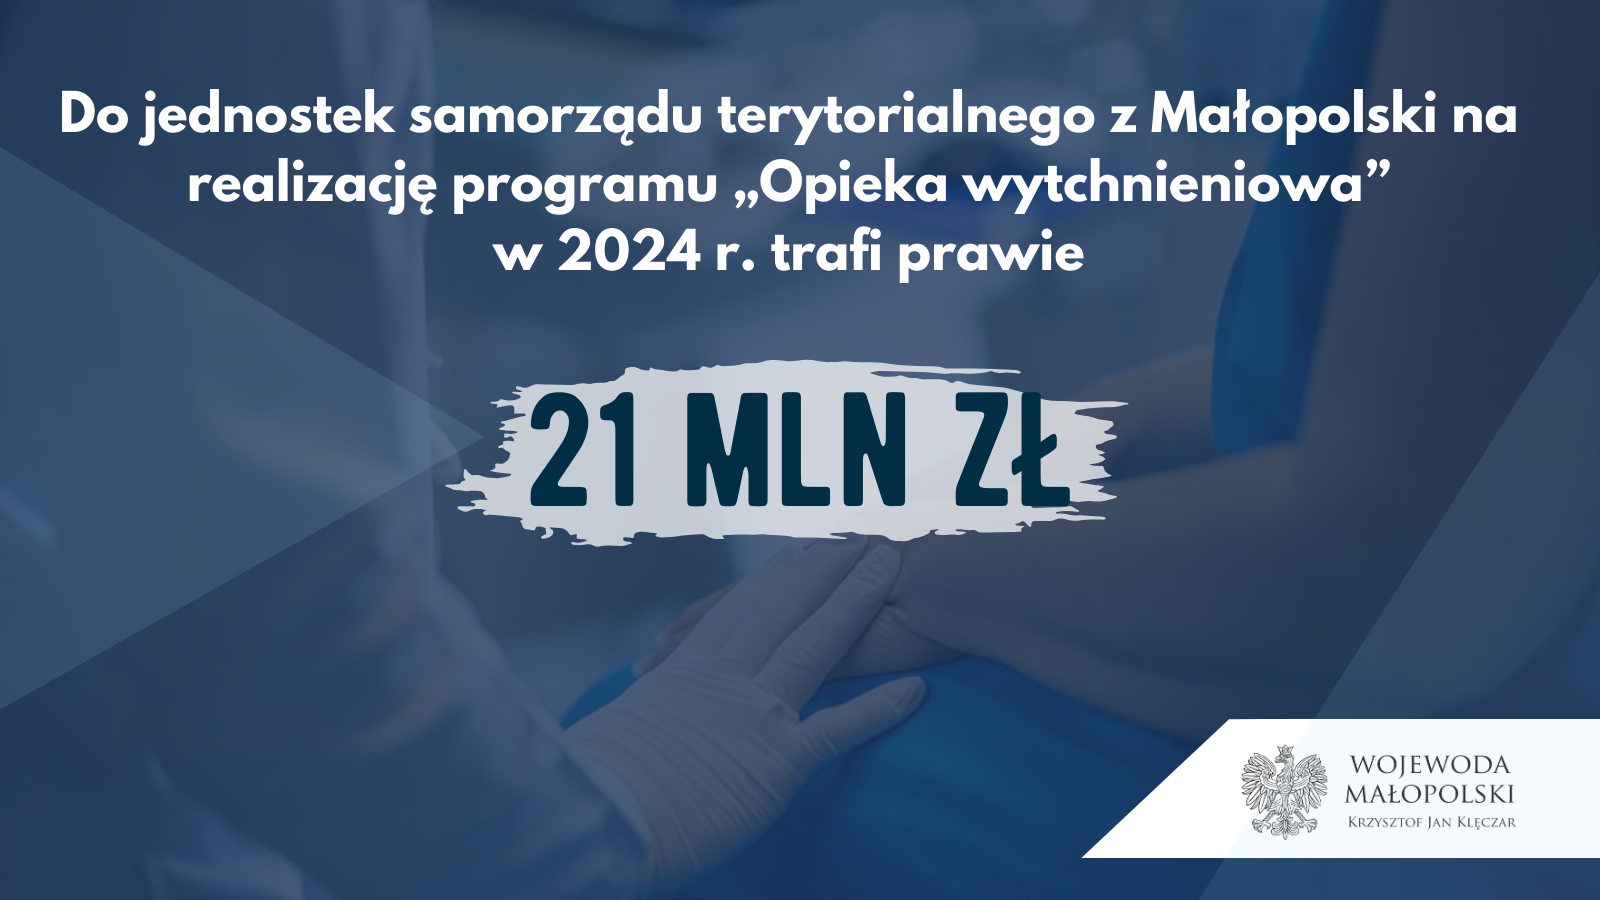 Niosąc wsparcie. Prawie 21 mln zł dla Małopolski na realizację Opieki wytchnieniowej w 2024 r.